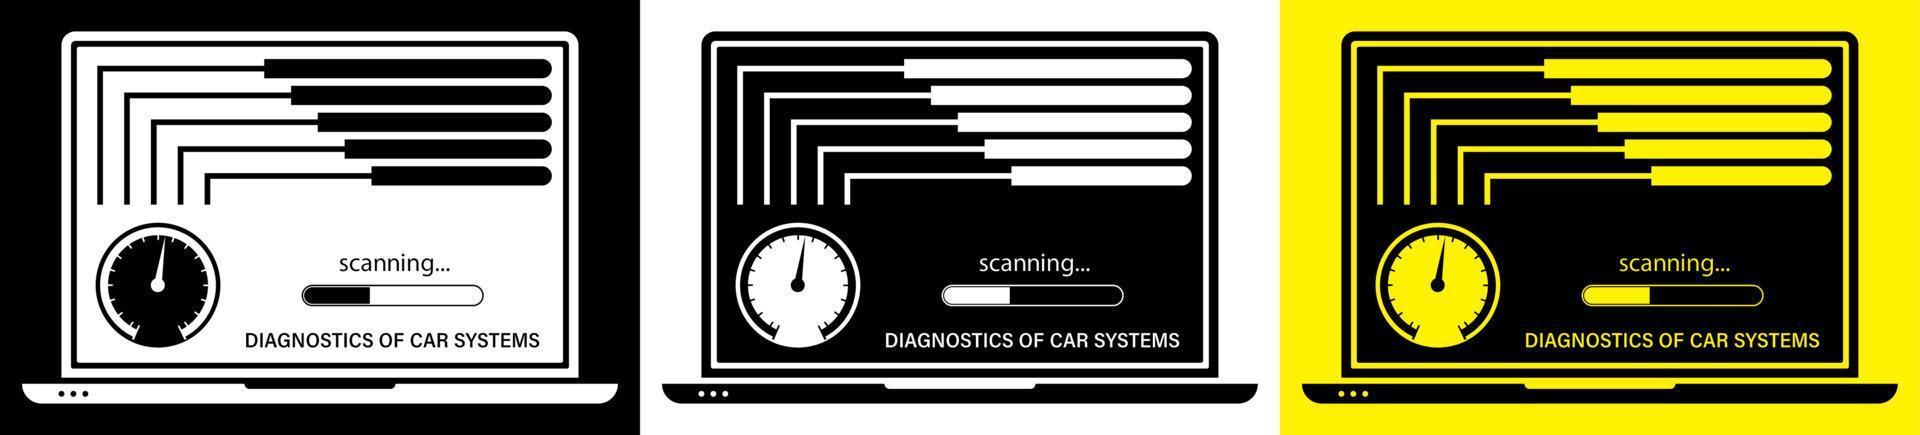 ordinateur portable vérifie que le véhicule fonctionne correctement. diagnostic informatique des systèmes automobiles avec des programmes spéciaux. service de voiture dans le centre de service. vecteur